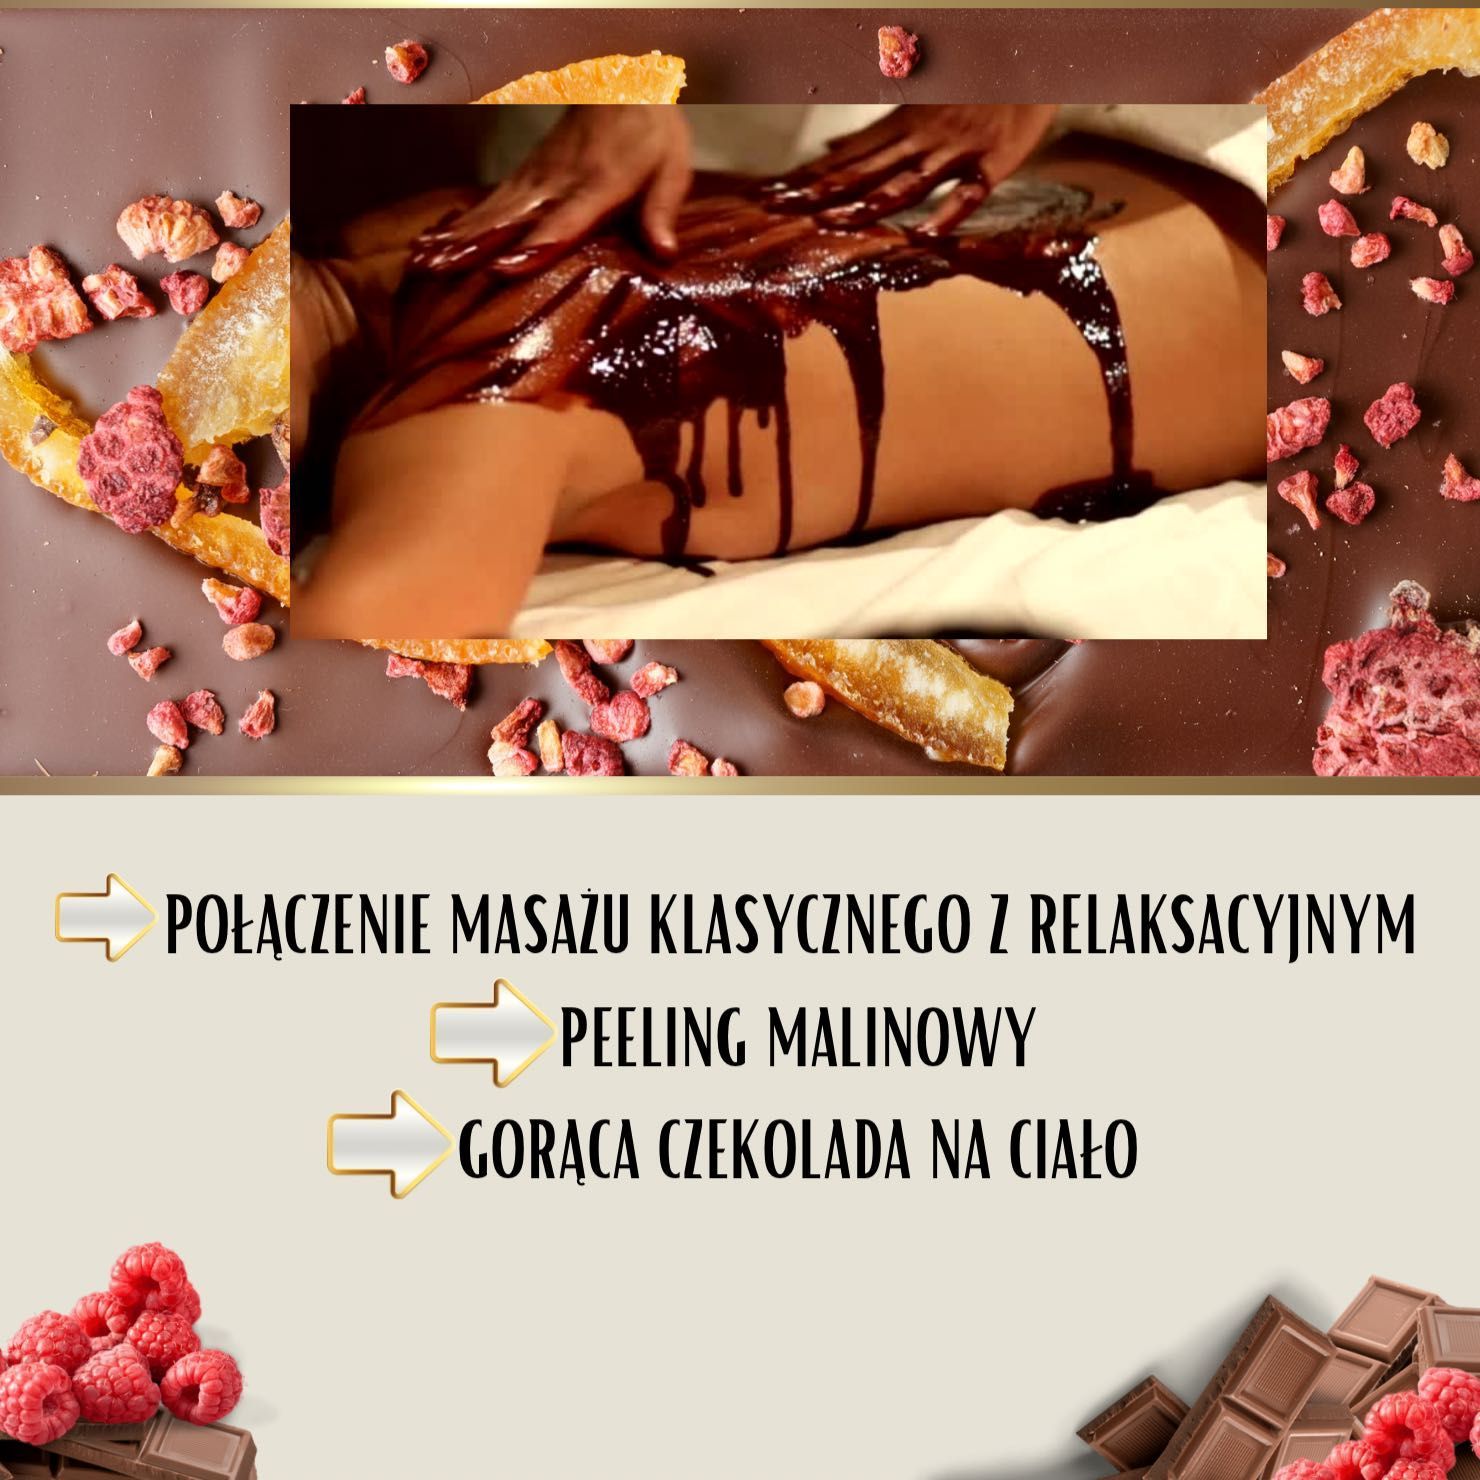 Portfolio usługi Maliny w czekoladzie